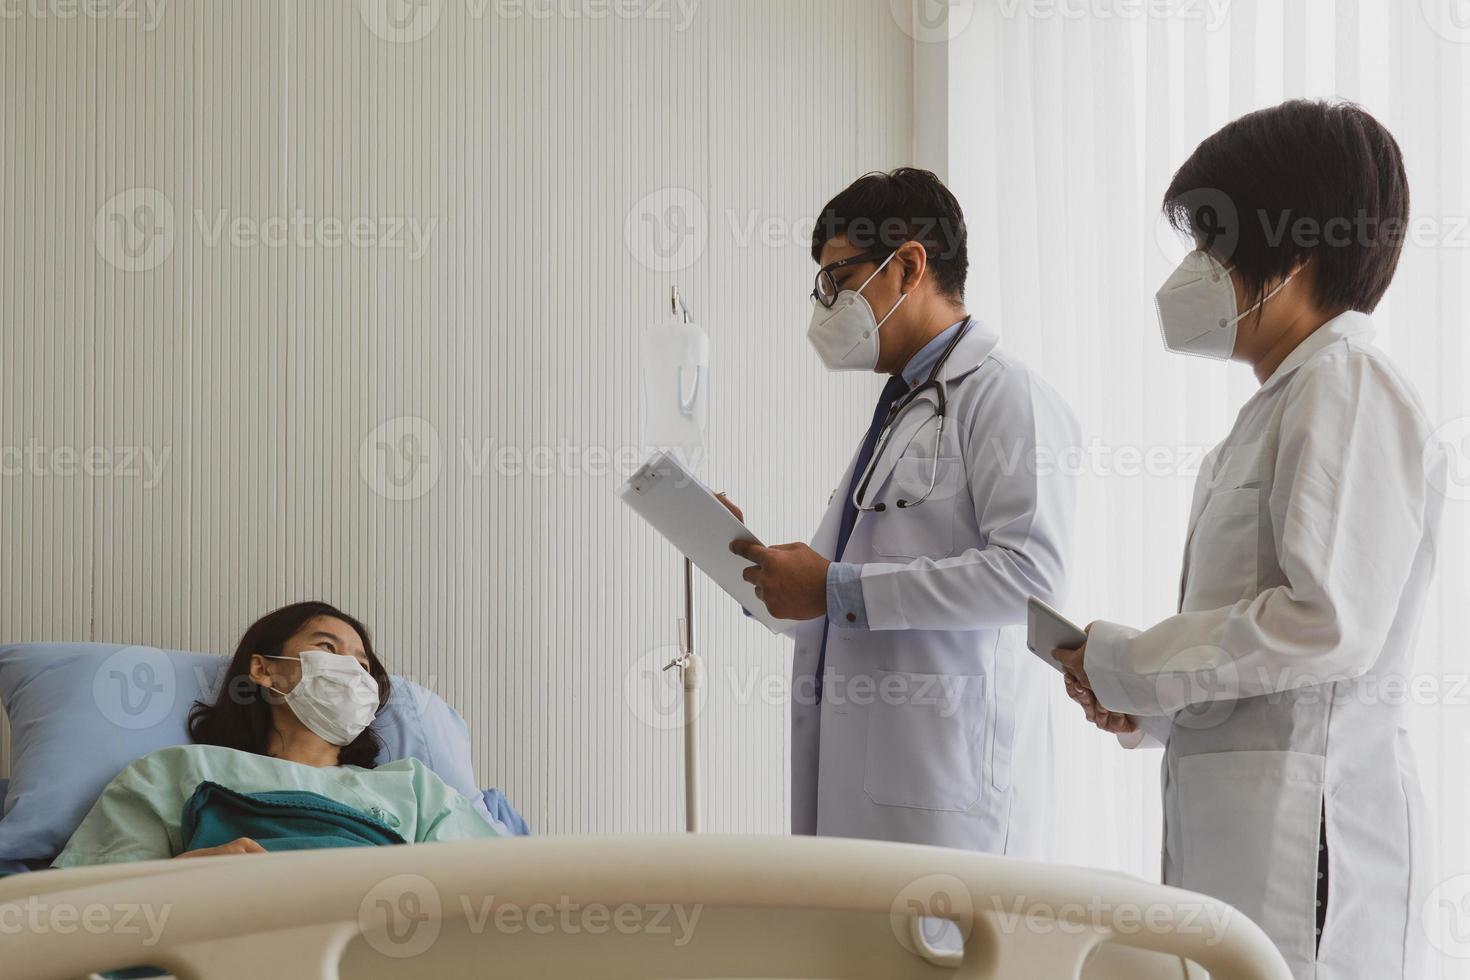 medico e studente di medicina visitano il paziente in reparto ospedaliero foto